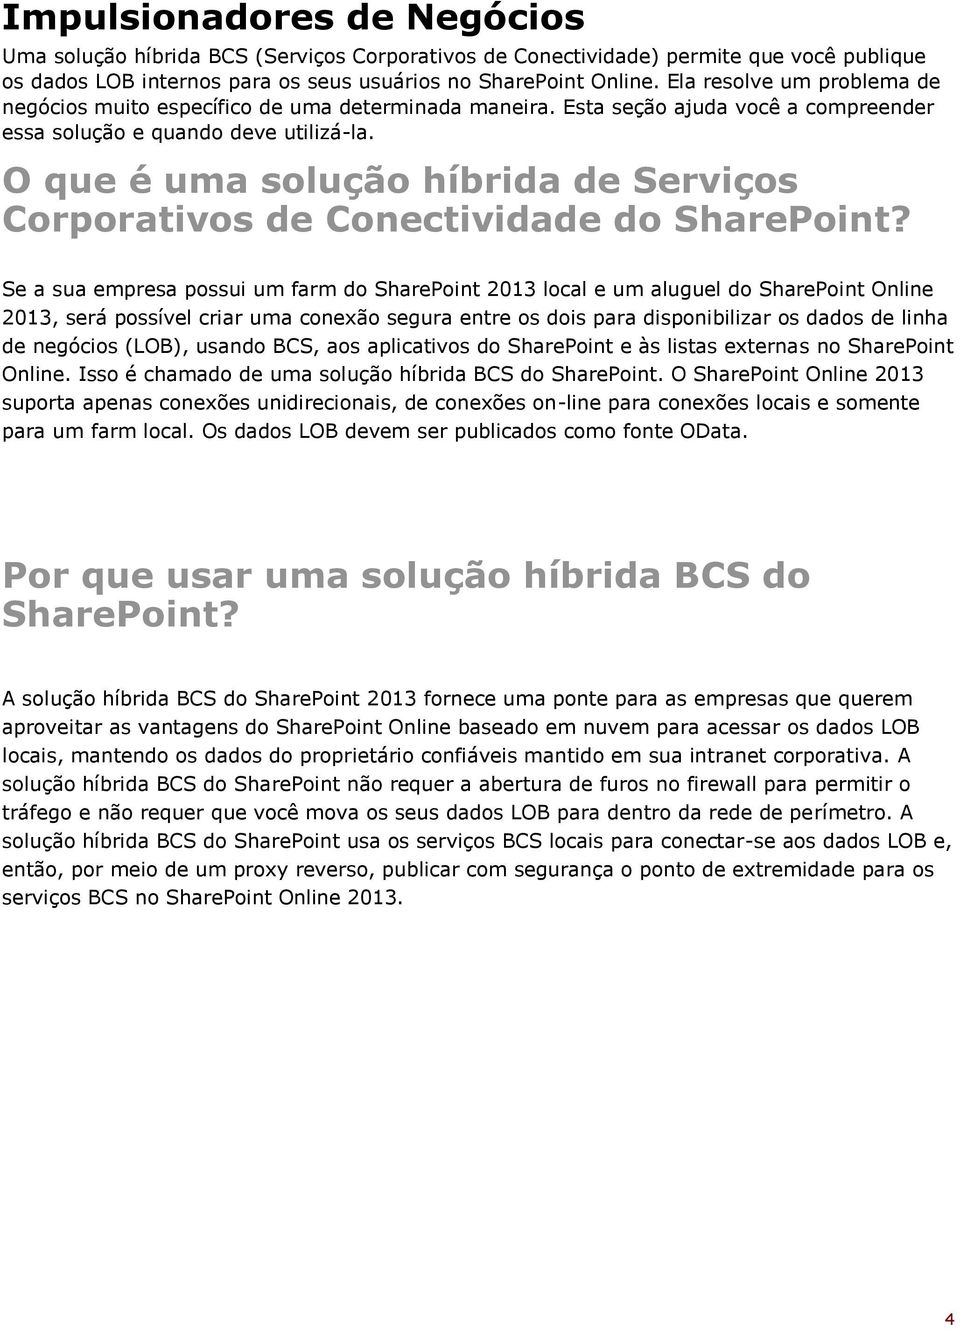 O que é uma solução híbrida de Serviços Corporativos de Conectividade do SharePoint?